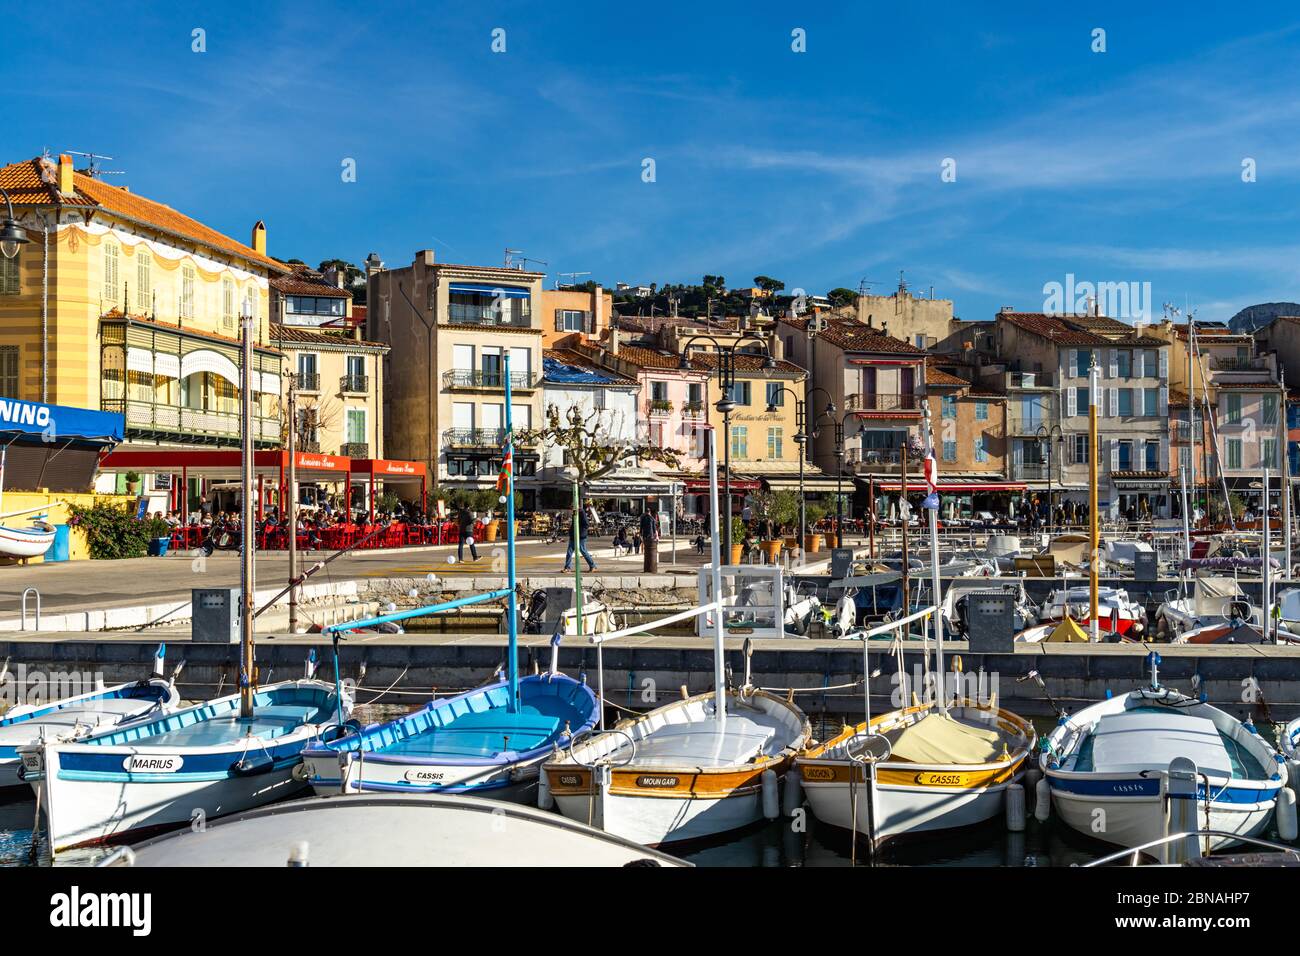 Des bateaux colorés amarrés au port pittoresque de Cassis, une célèbre station balnéaire du sud de la France. Cassis, France, janvier 2020 Banque D'Images